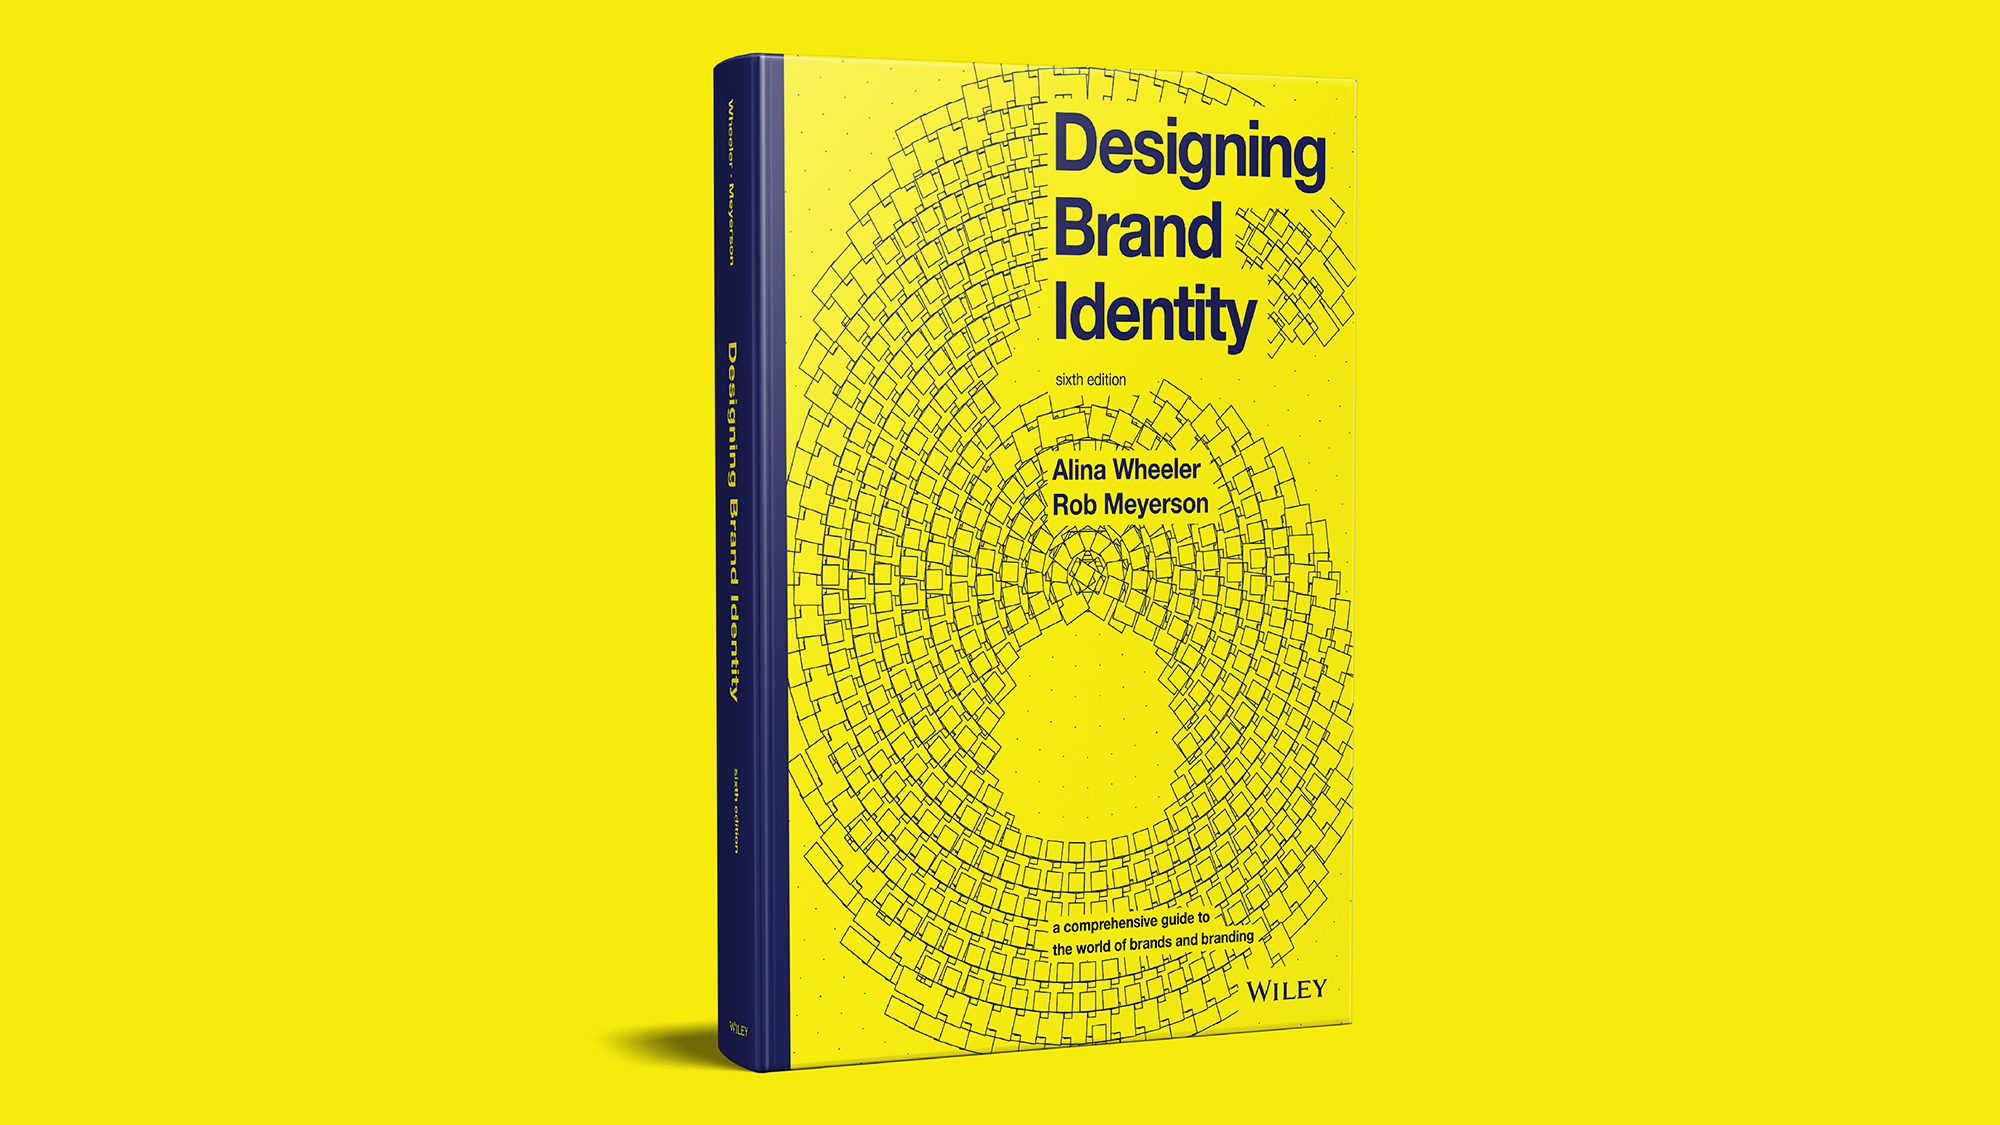 “Designing Brand Identity” v6.0